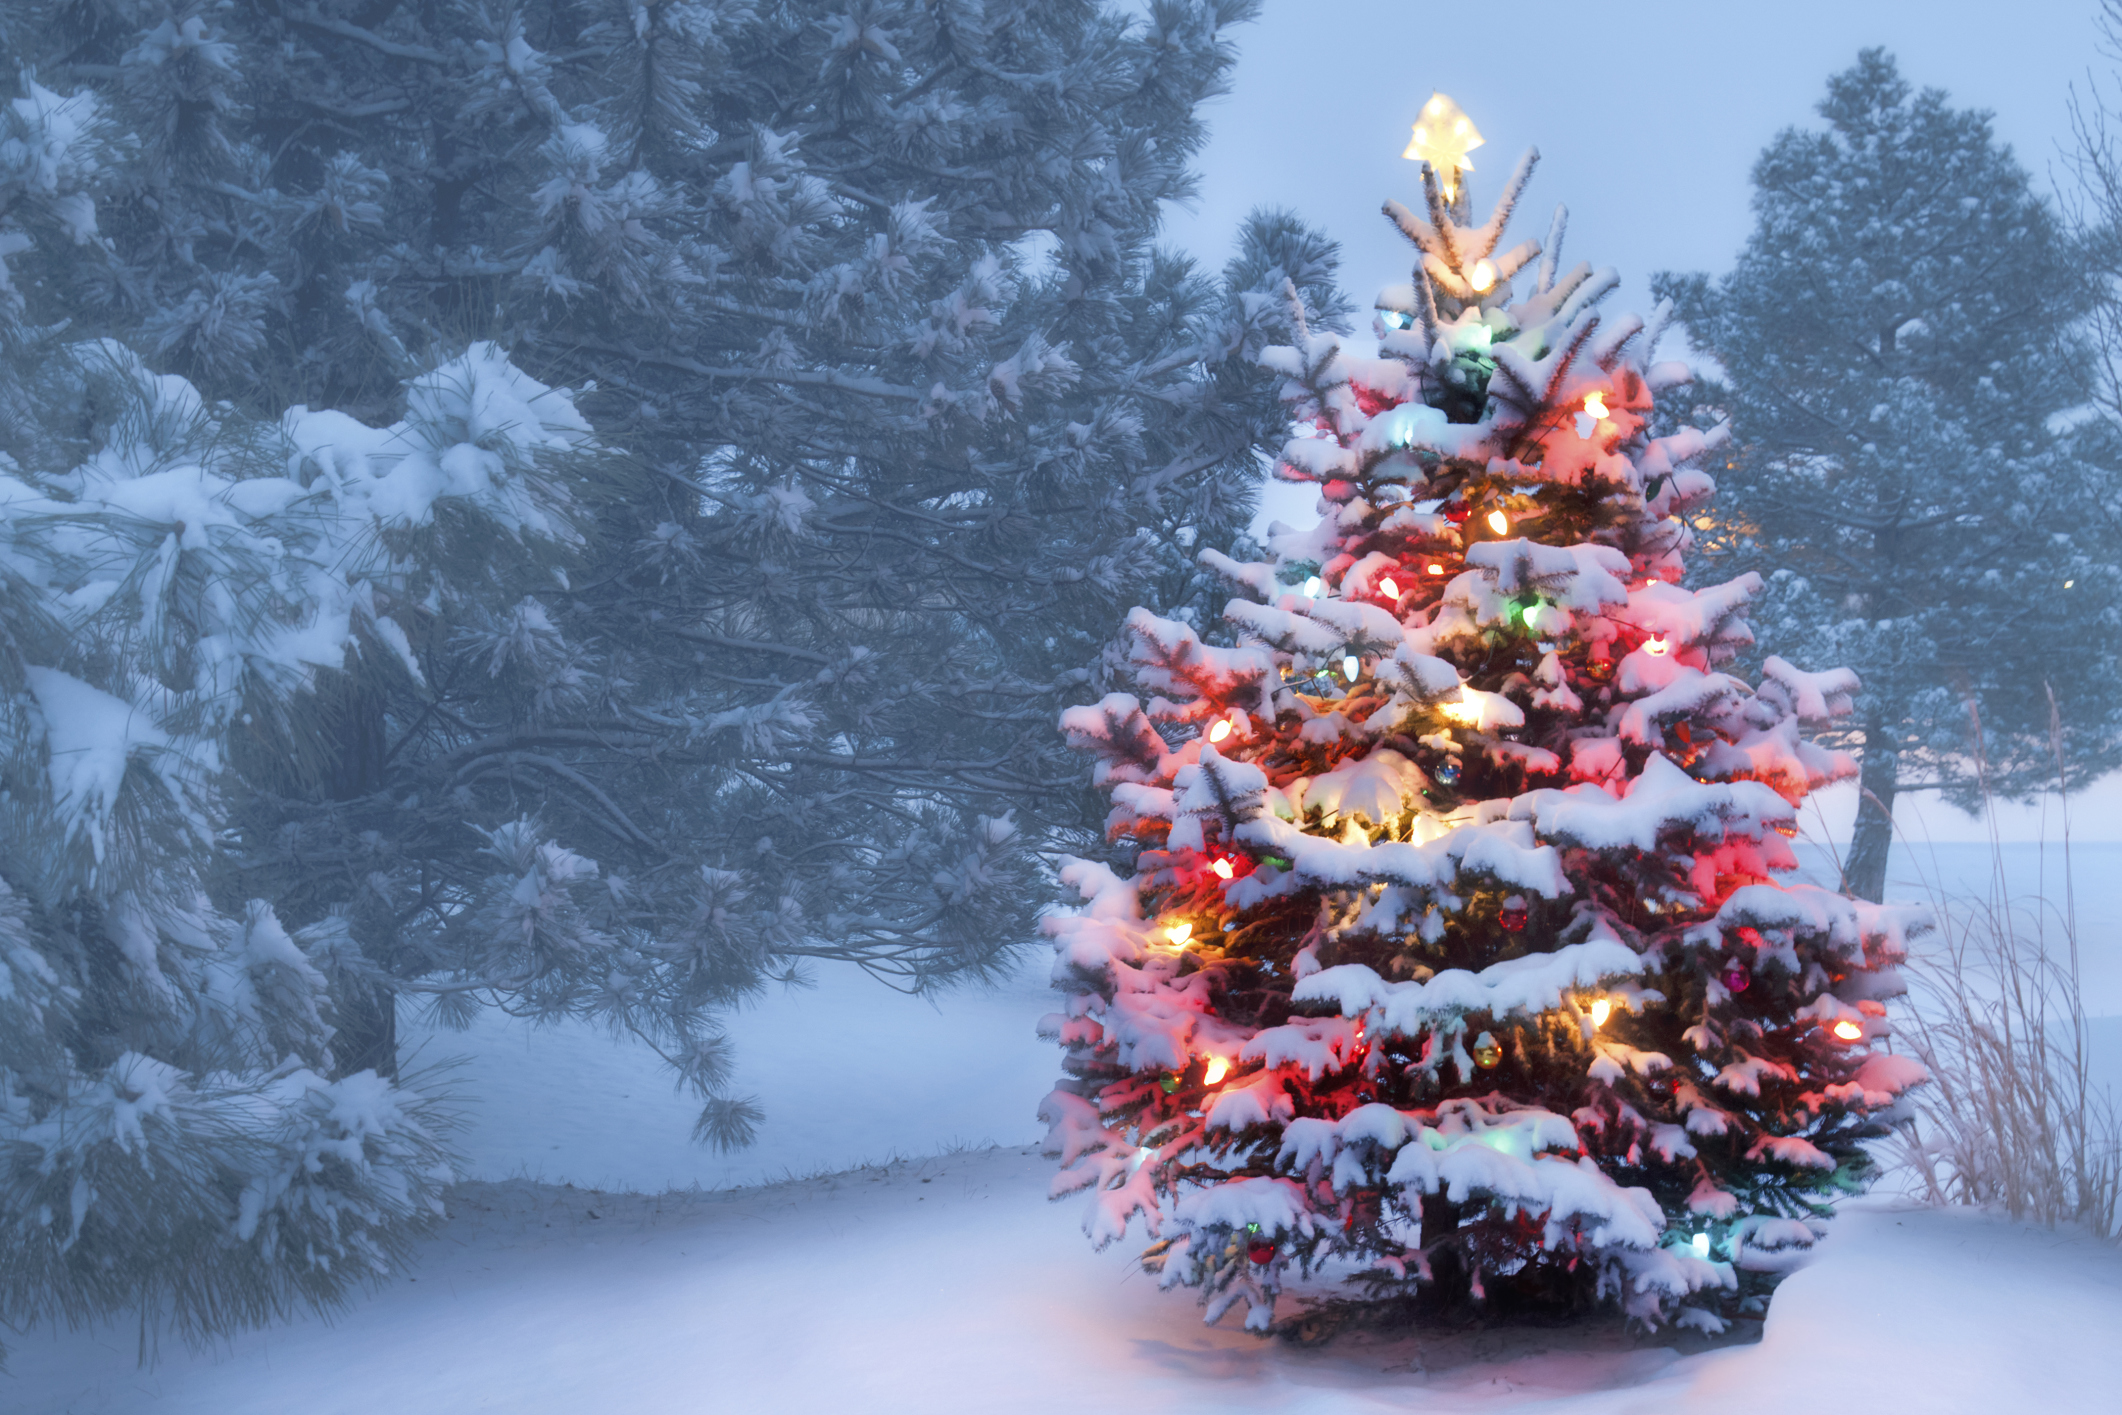 مزرعه درخت کریسمس ، یک ایده تجاری منحصر به فرد و پردرآمد